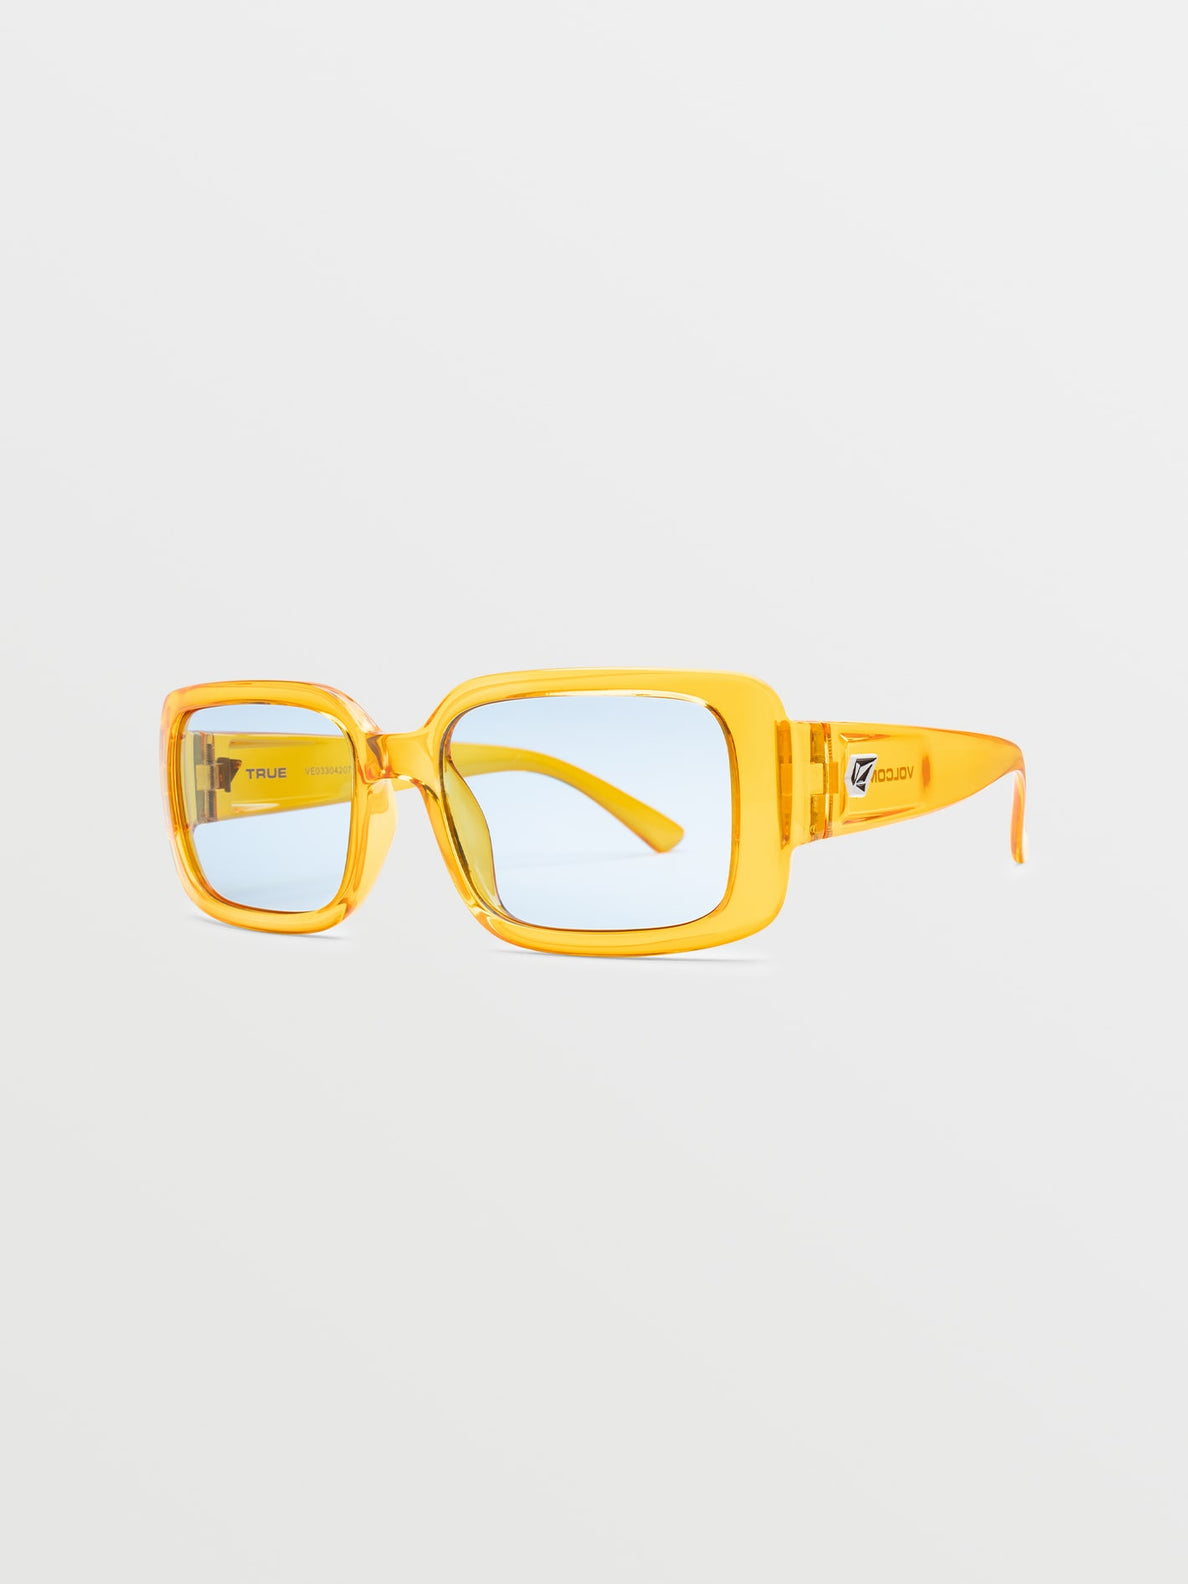 Gafas de sol Volcom True Sunglasses - Gloss Mustard/Blue